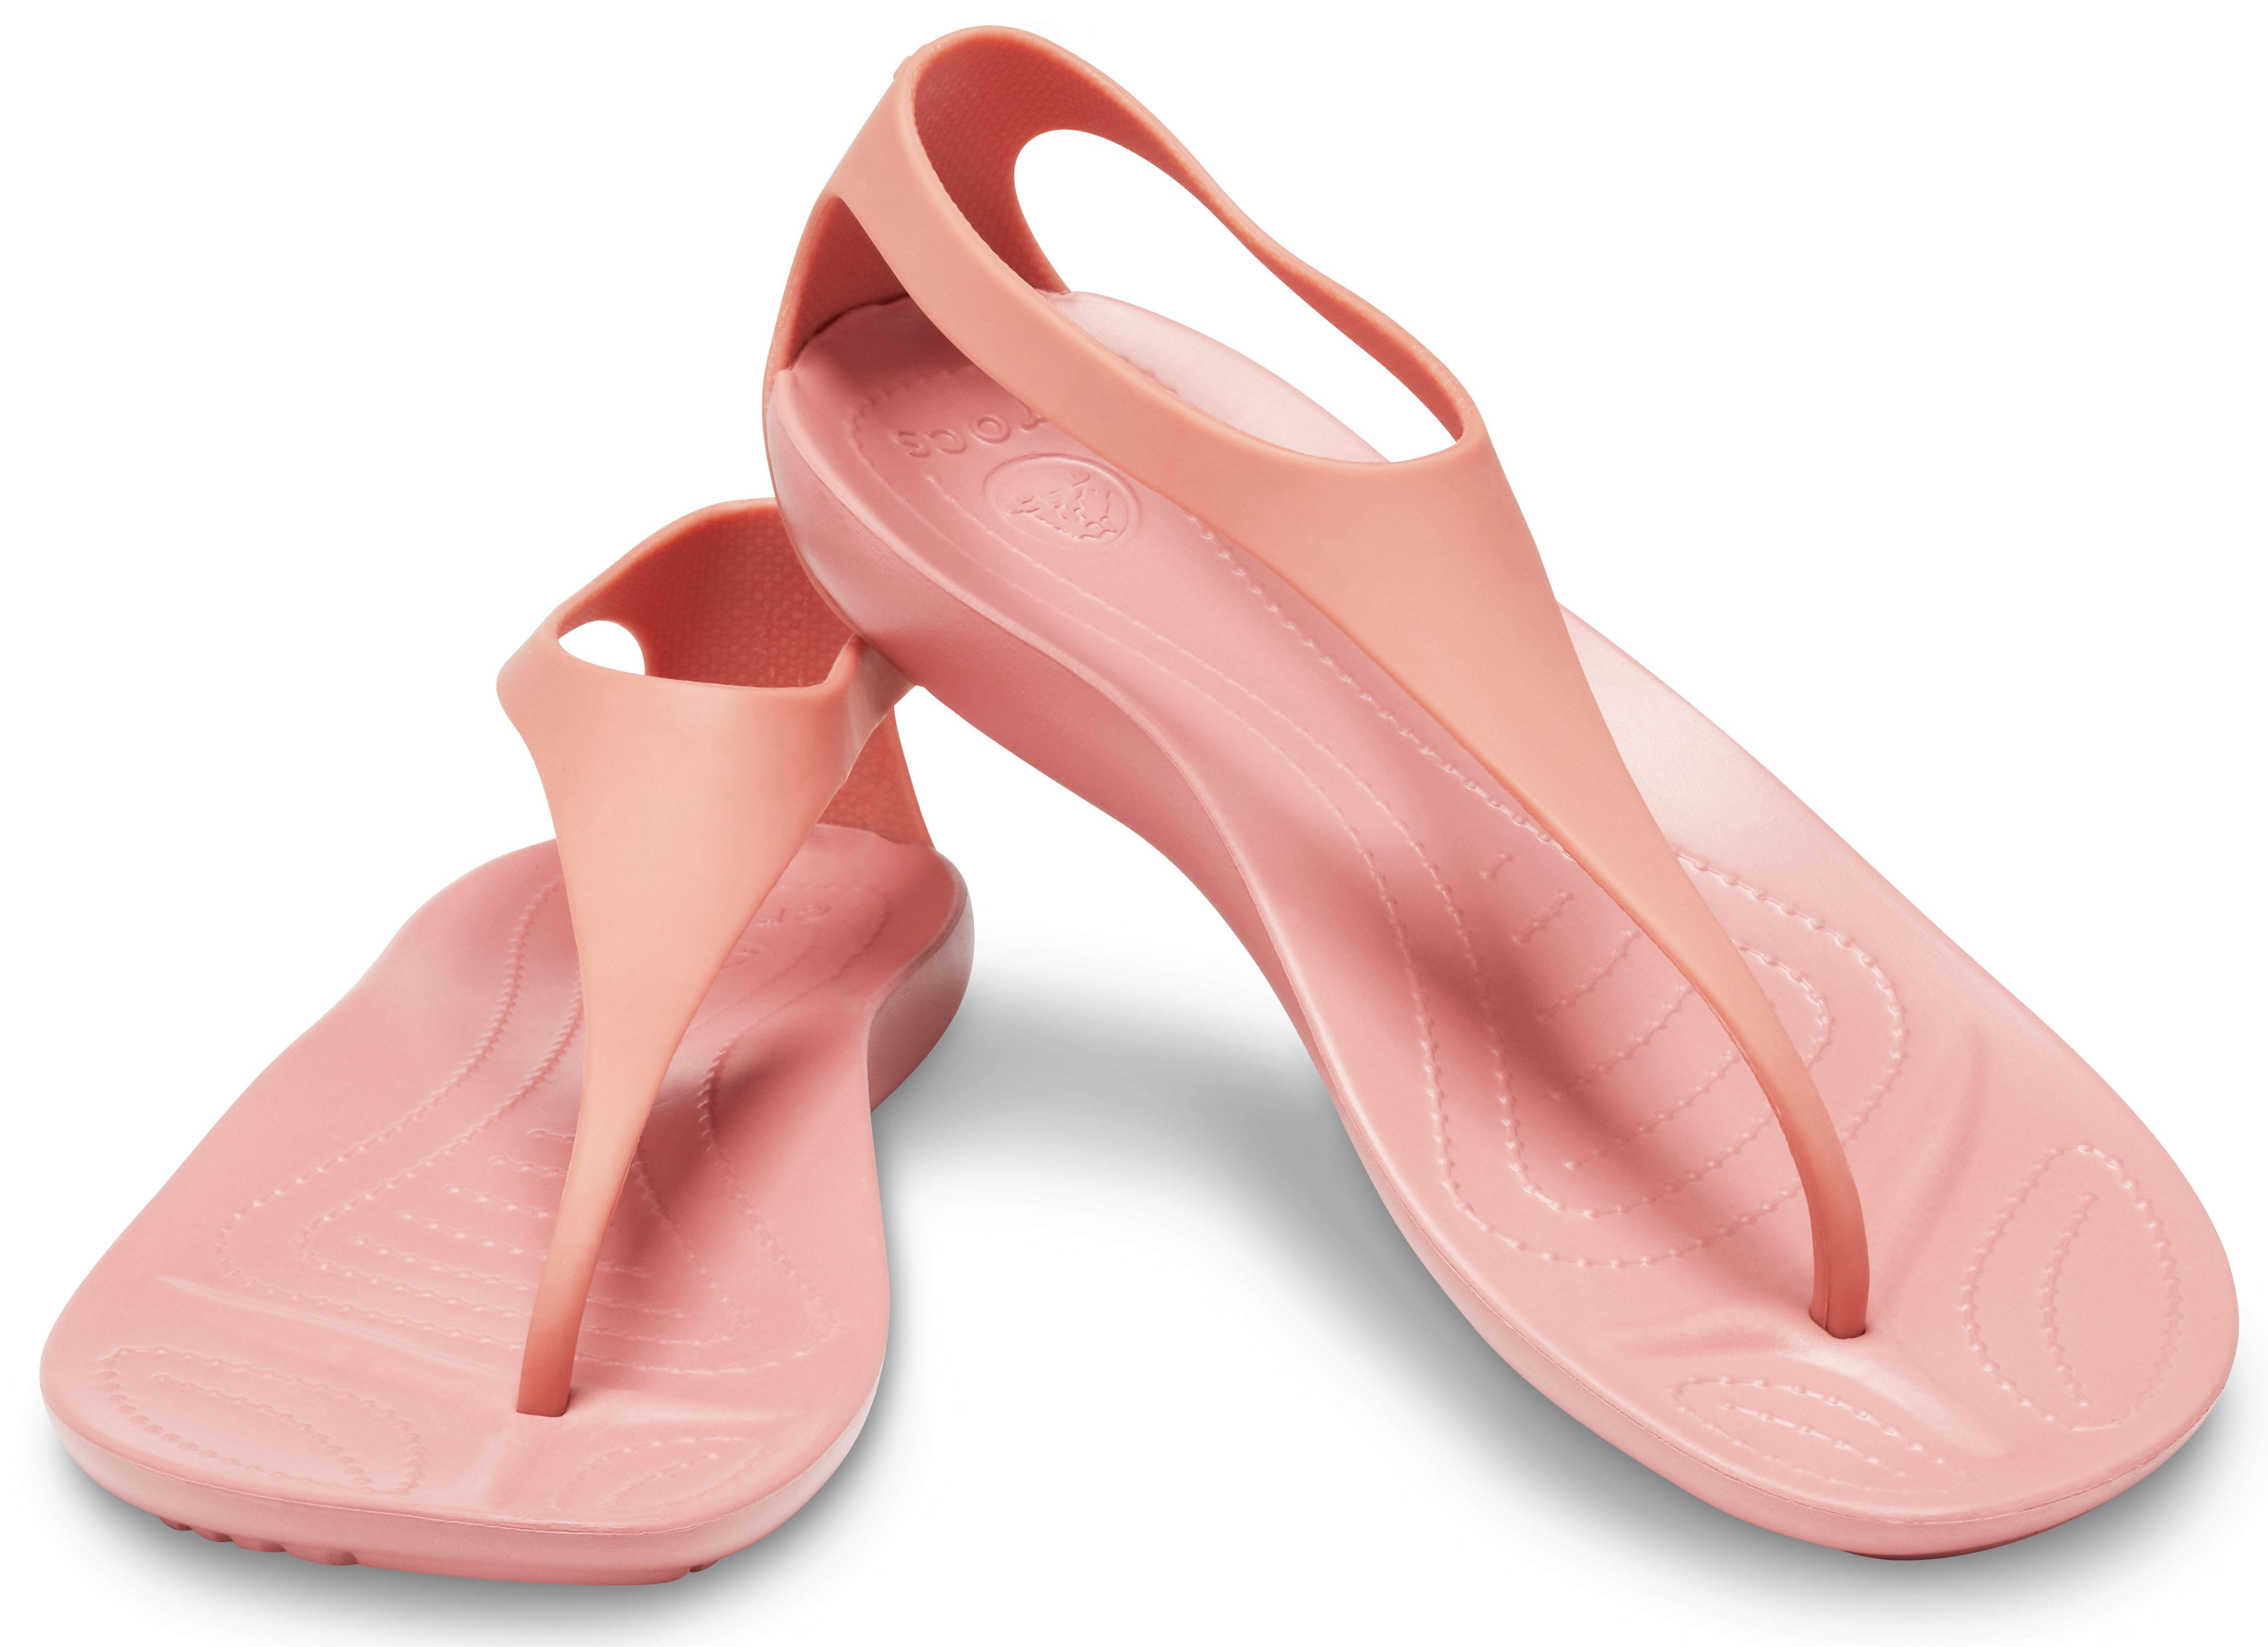 Sleek Women's Flip Flops - Crocs